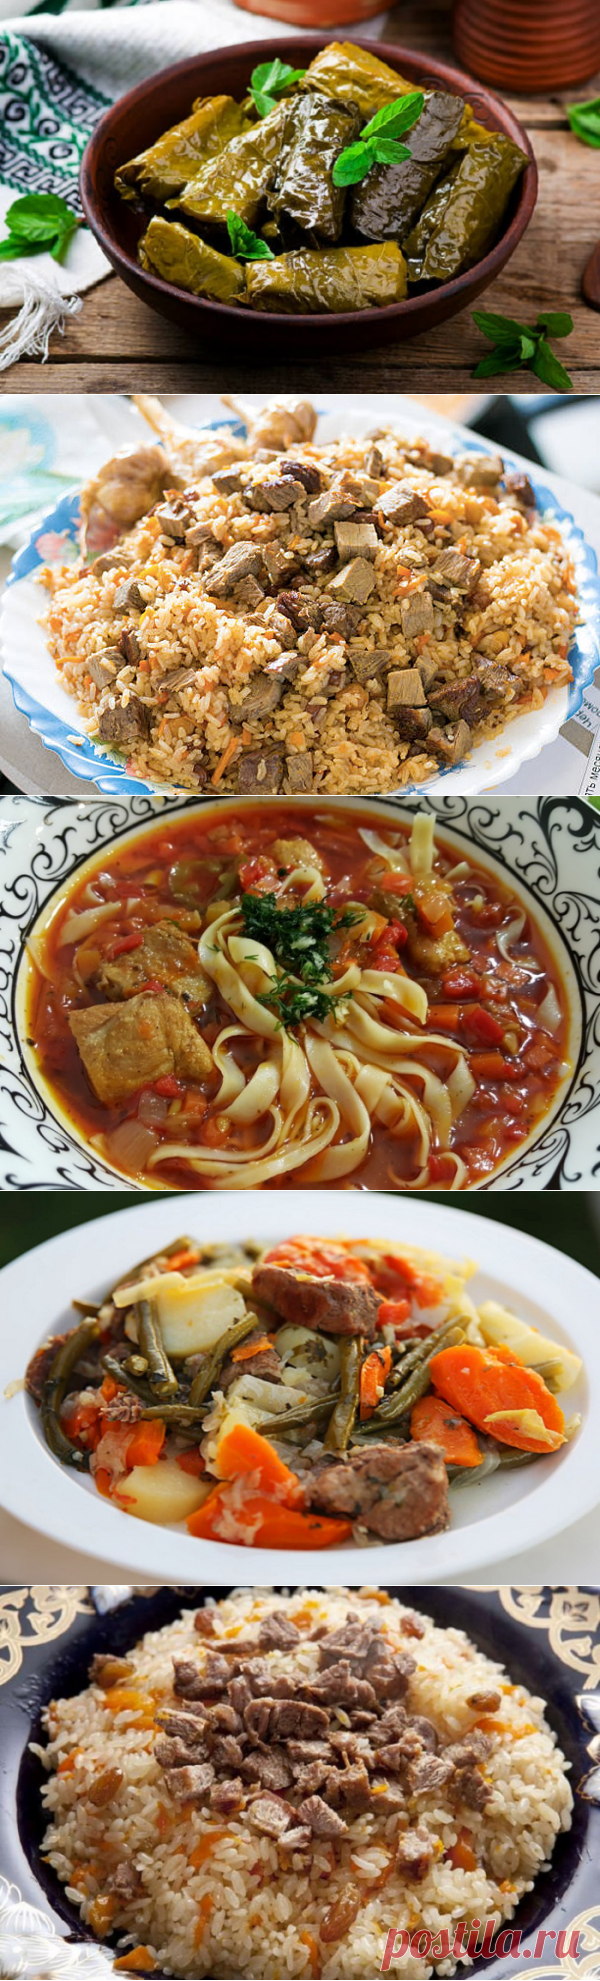 5 причин полюбить узбекскую кухню